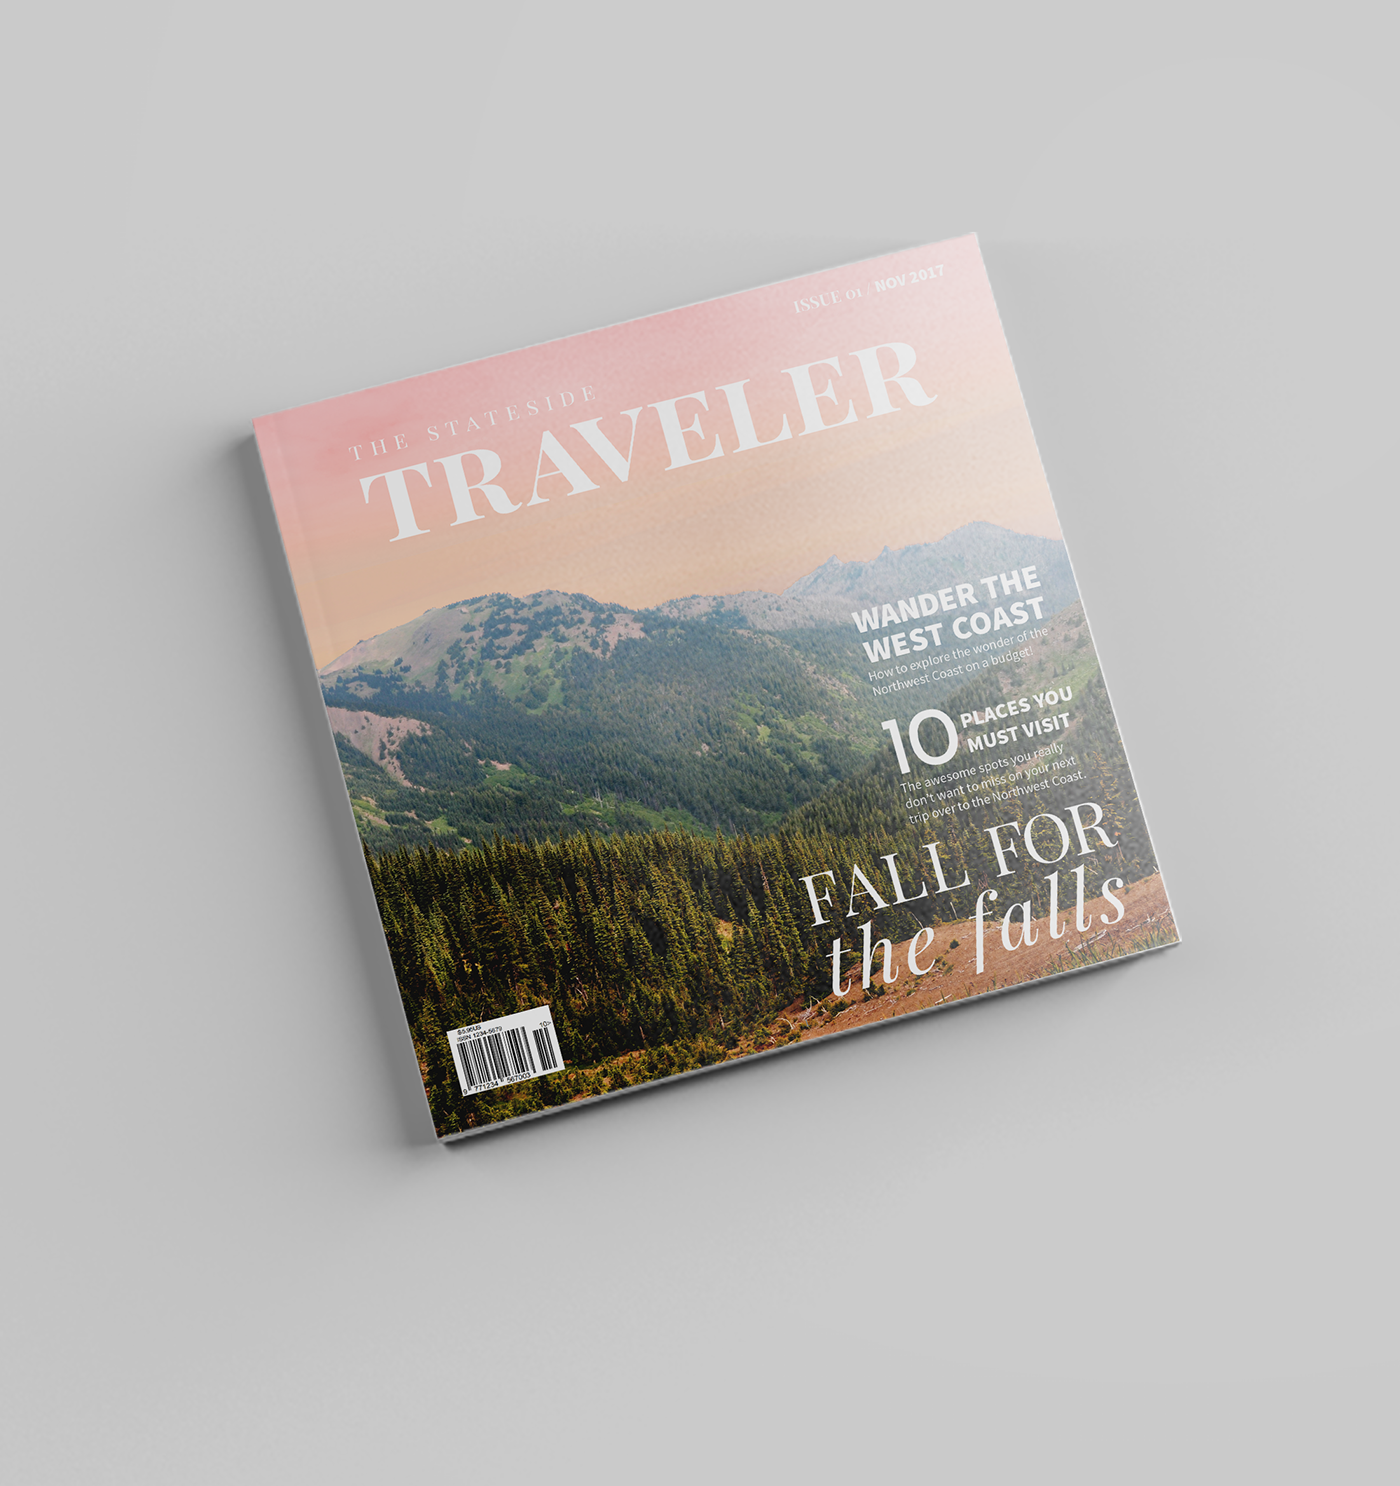 Traveling magazine. Travel Guide Magazine Design. Travel Magazine Design. Russian traveller журнал.